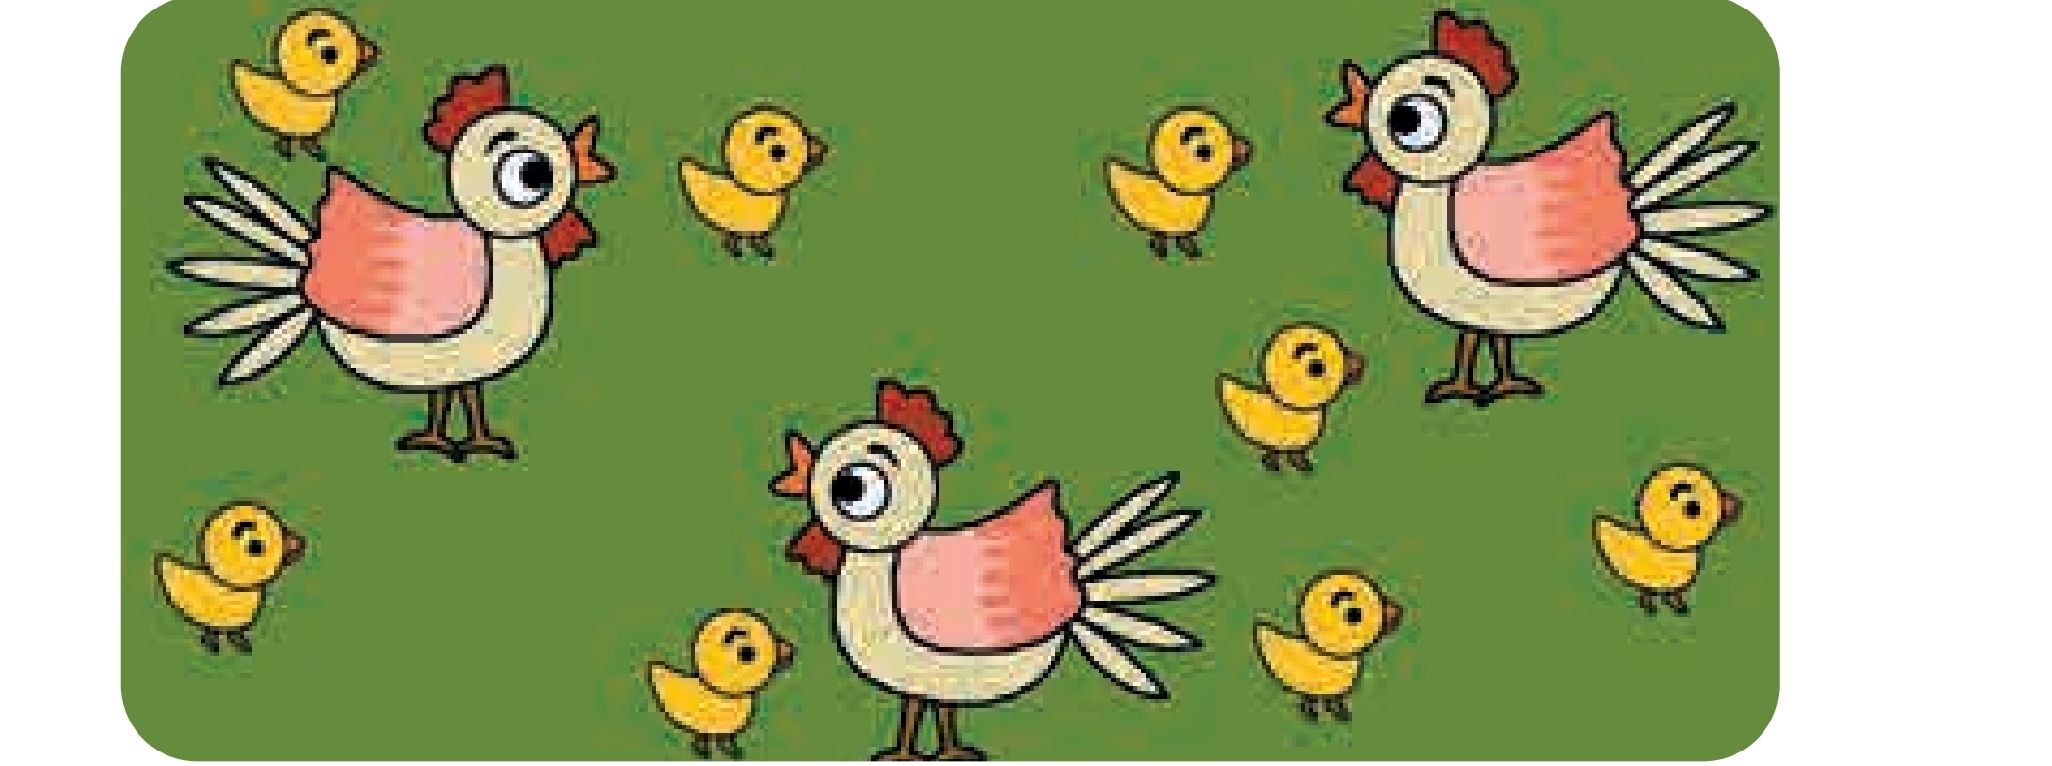 Perhatikan gambar 1. Berapa jumlah anak ayam?Tangkap layar buku Matematika kelas 1 Kurikulum Merdeka/Sri Setiyowati/Portal Pekalongan.